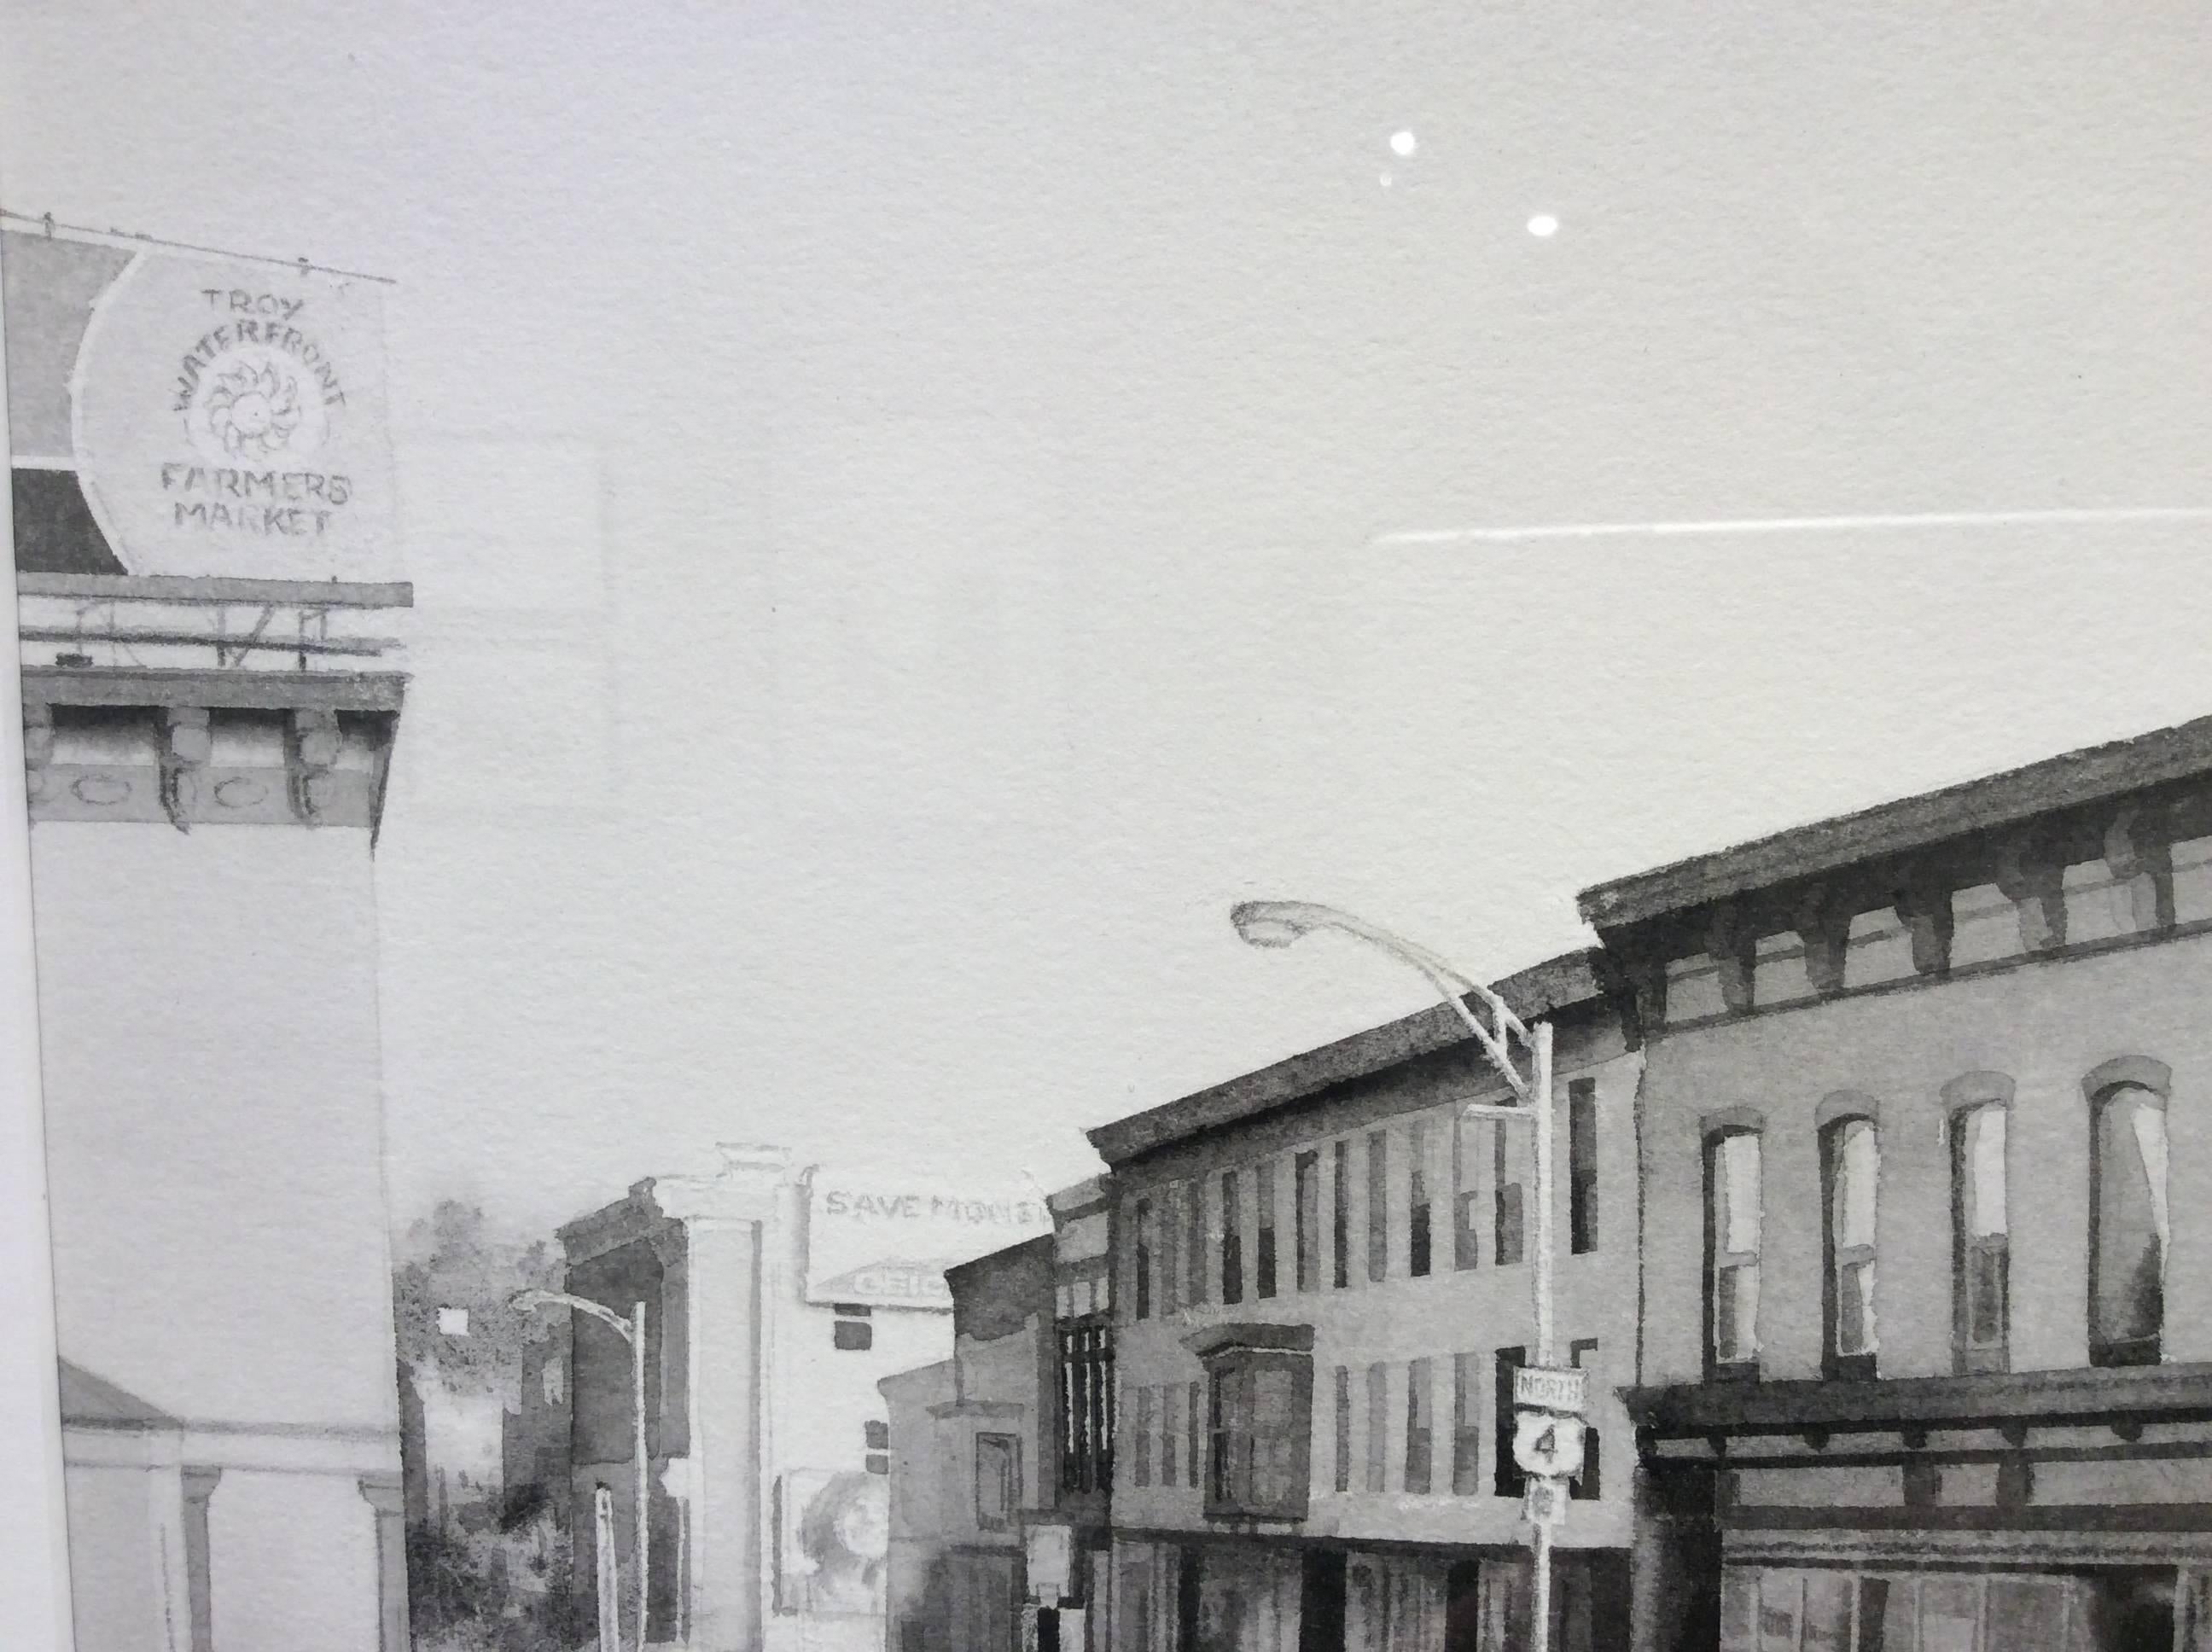 King Street, Troy (moderne, realistische Stadtlandschaft in Schwarz-Weiß-Aquarell) (Grau), Figurative Art, von Scott Nelson Foster